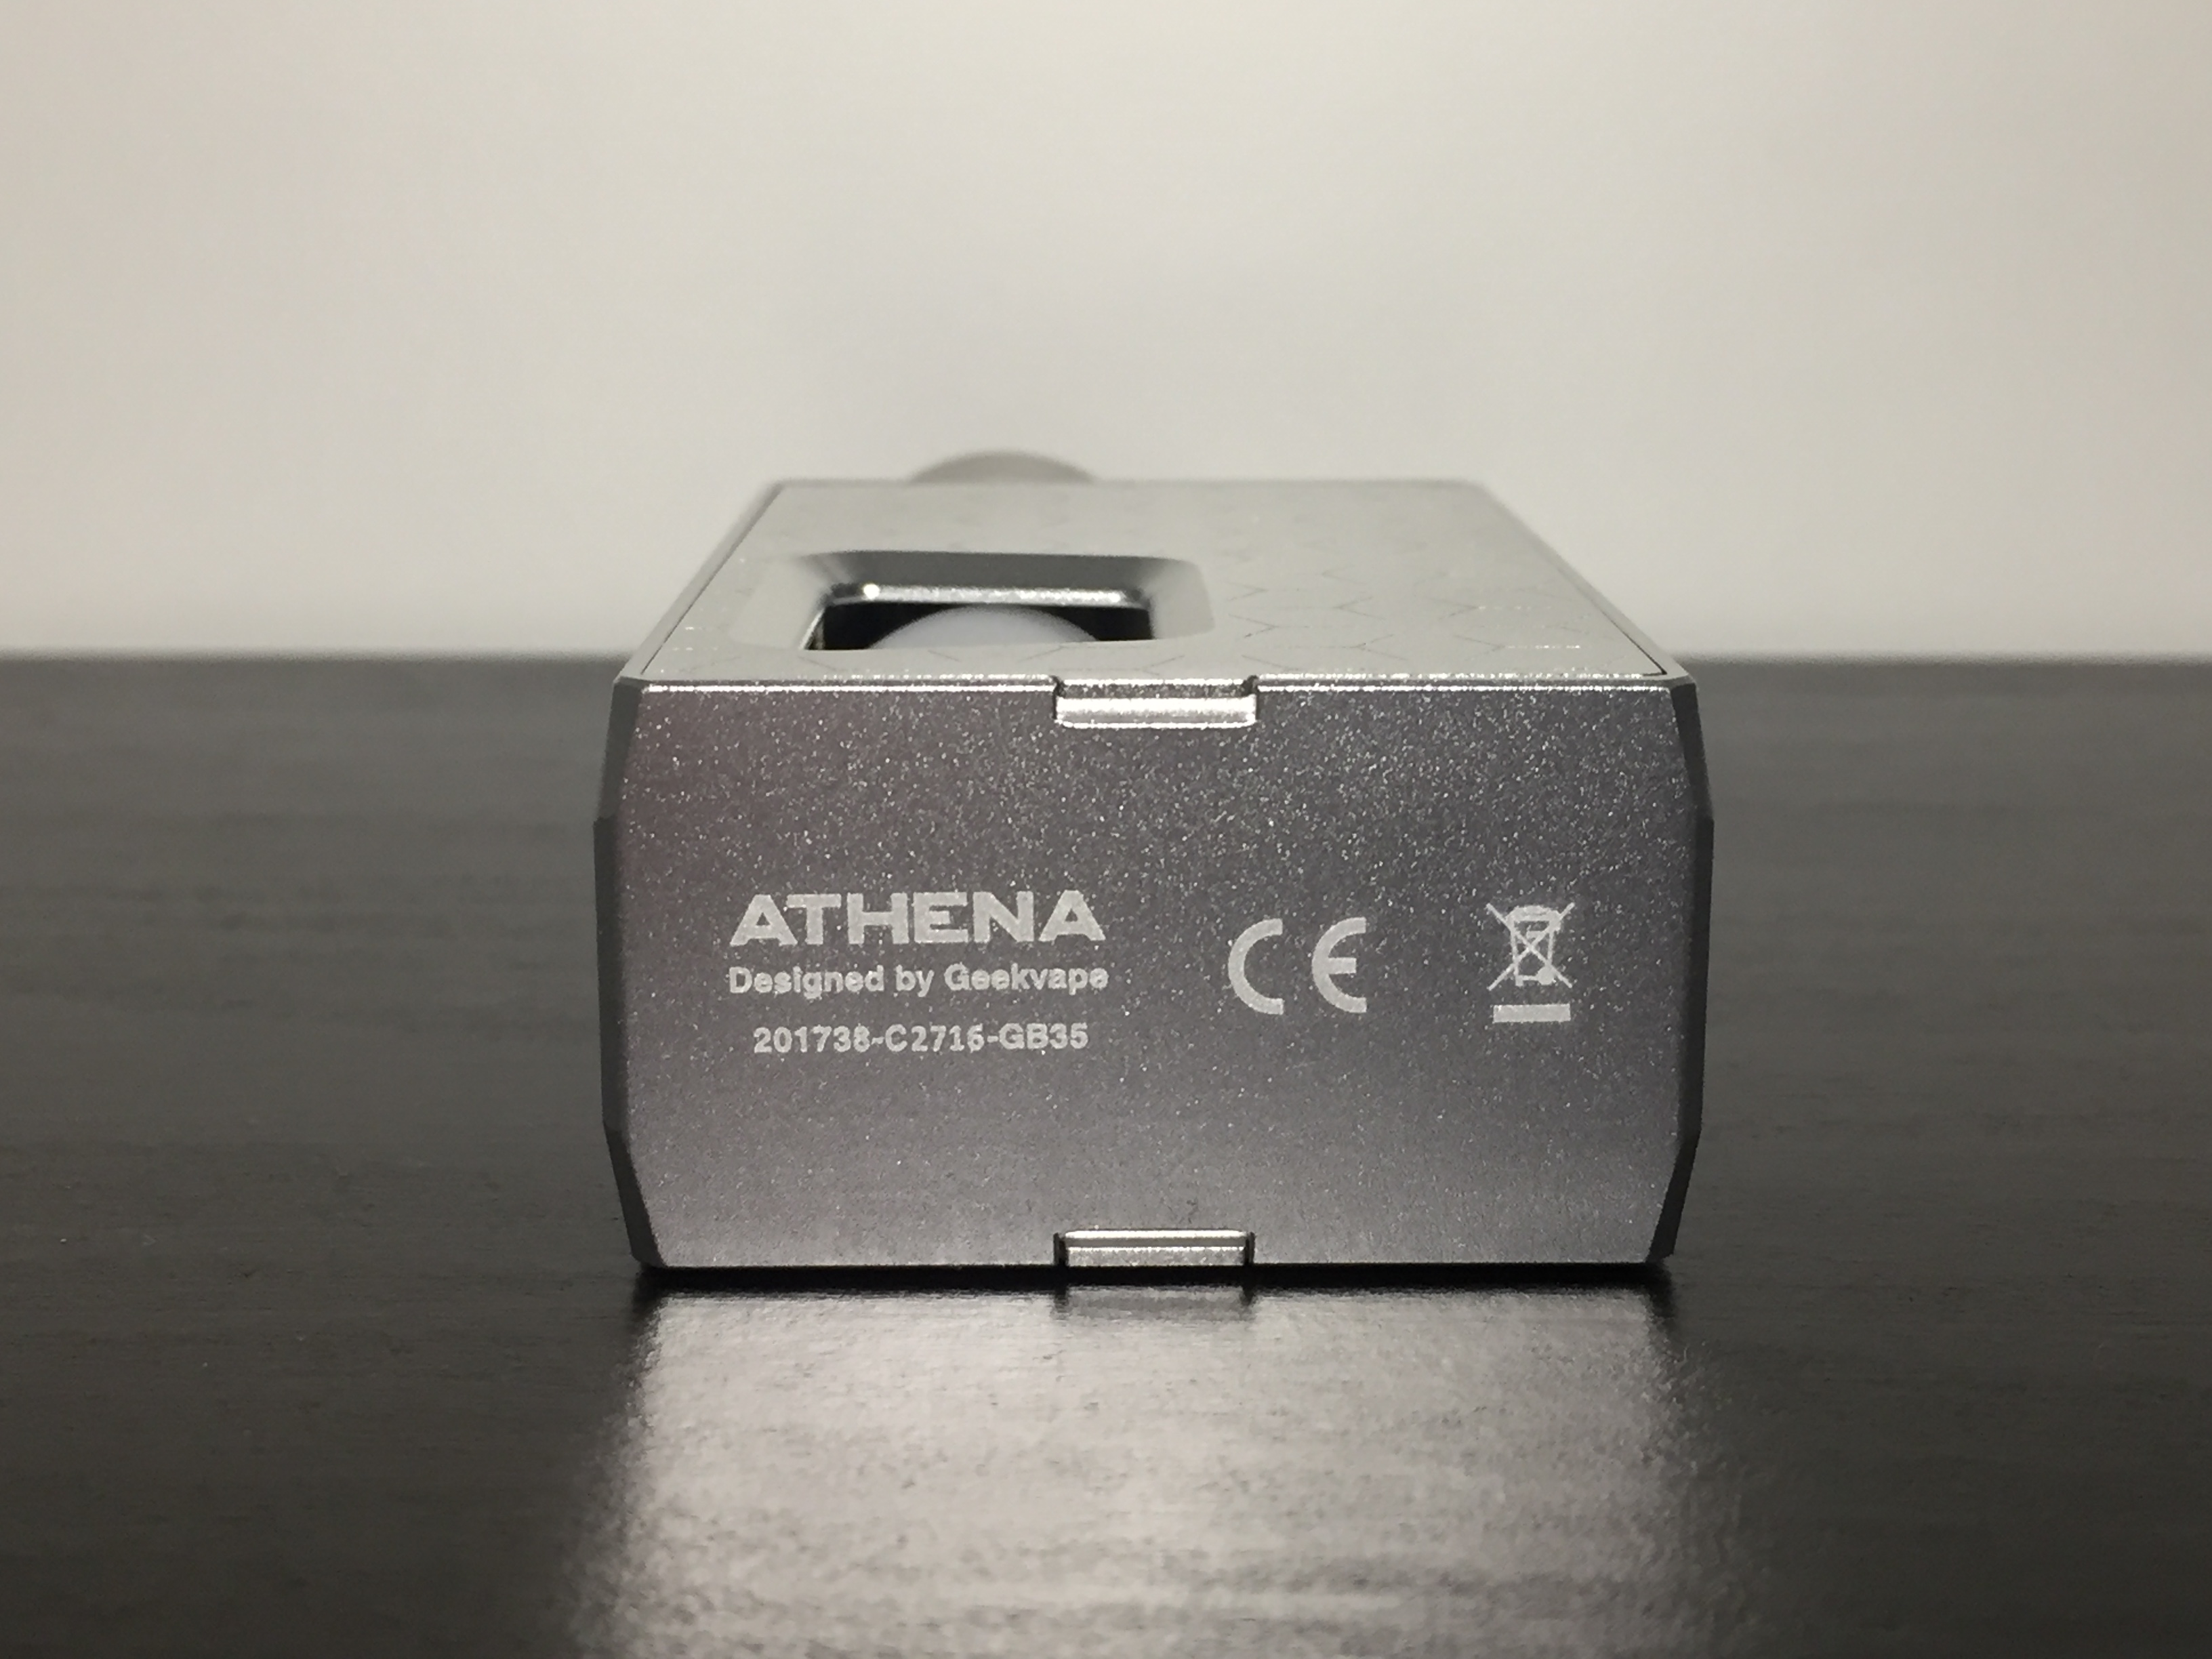 Athena-squonk-kit-27